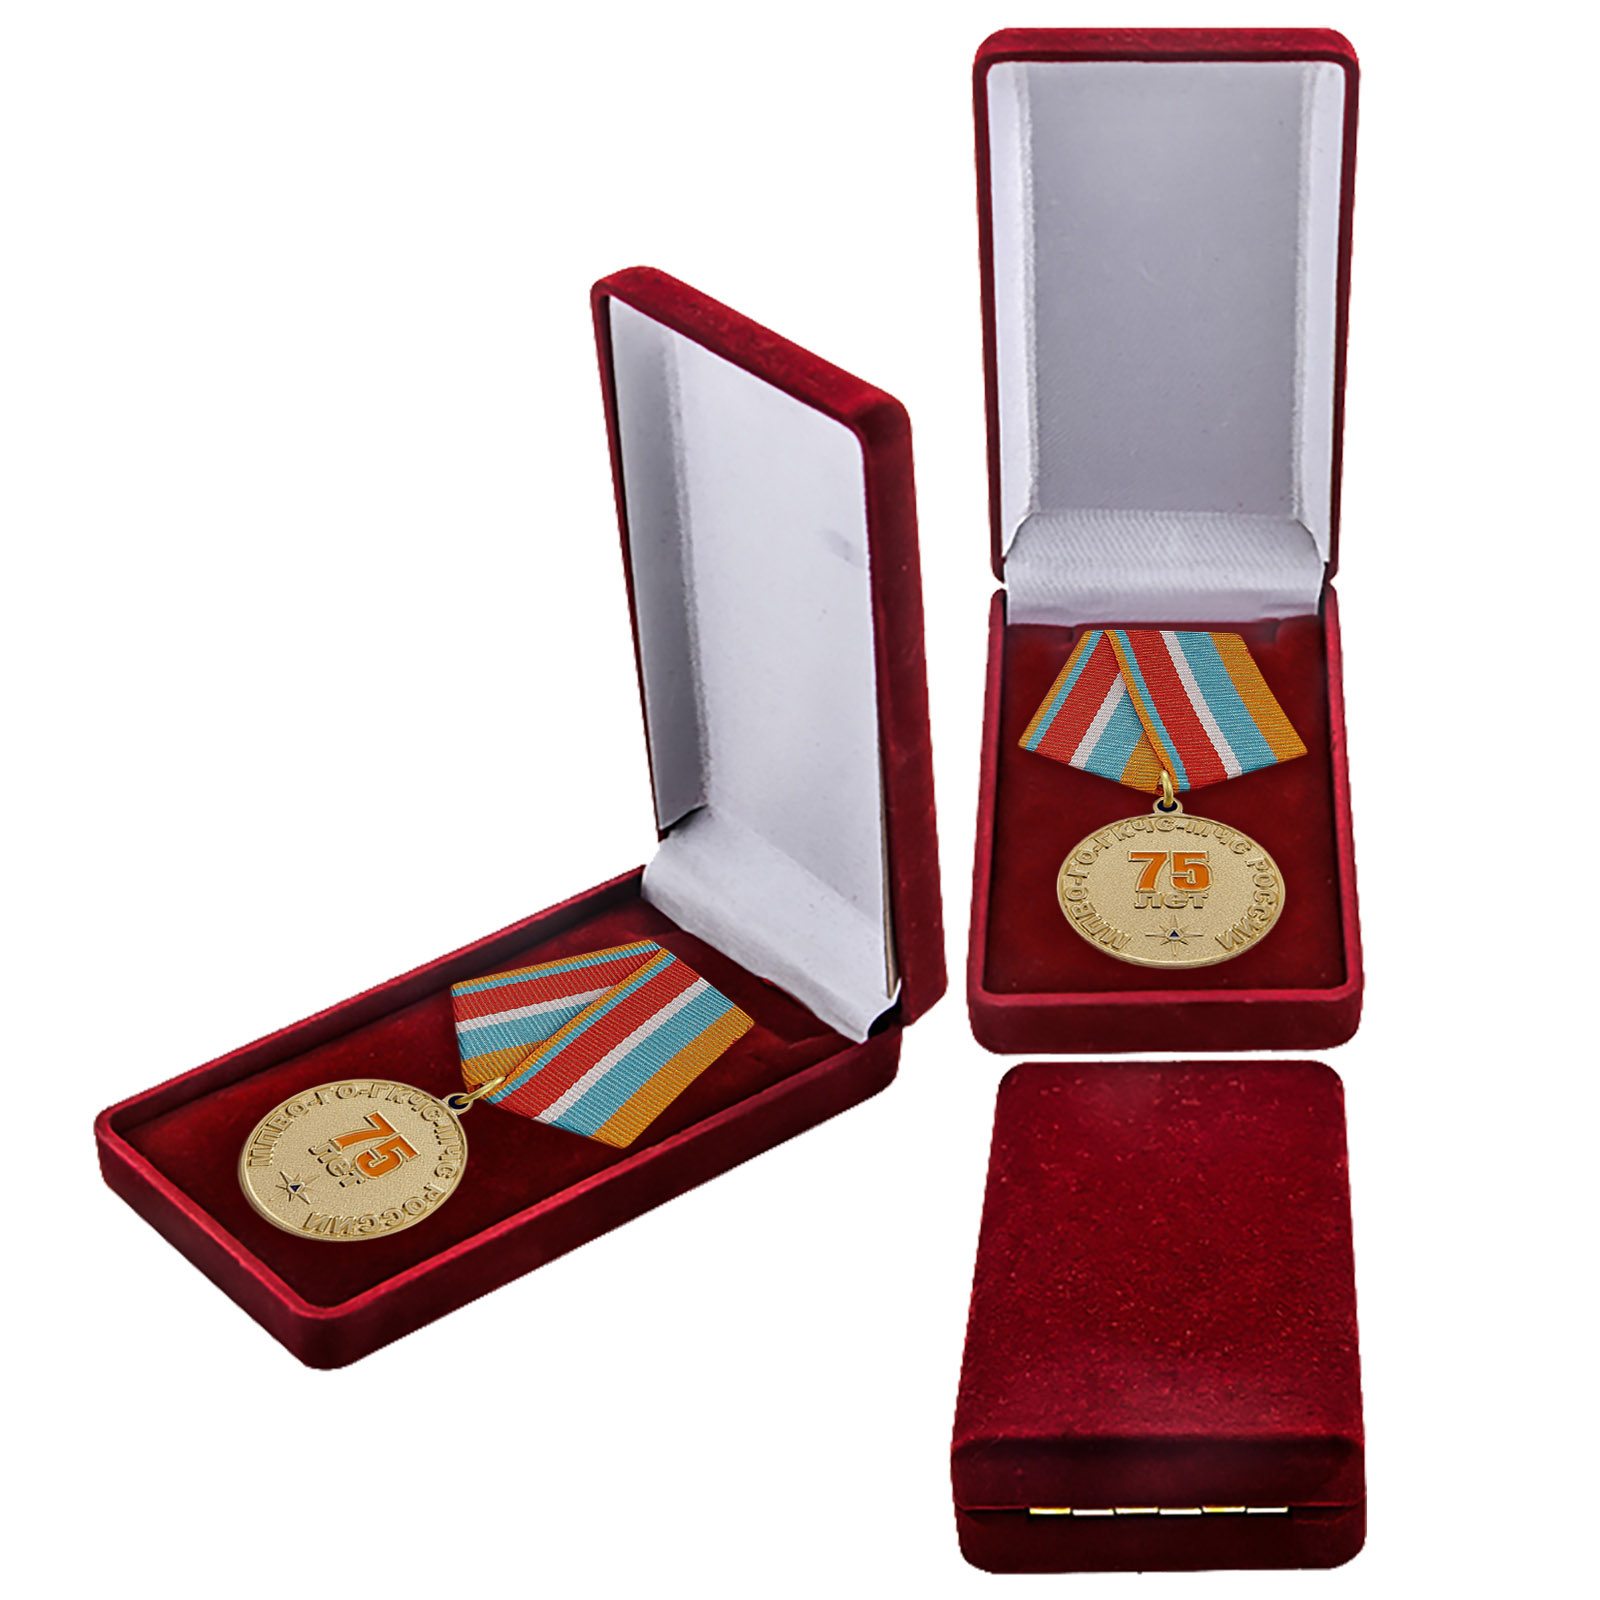 Купить памятную медаль "Гражданской обороне МЧС 75 лет" в подарок